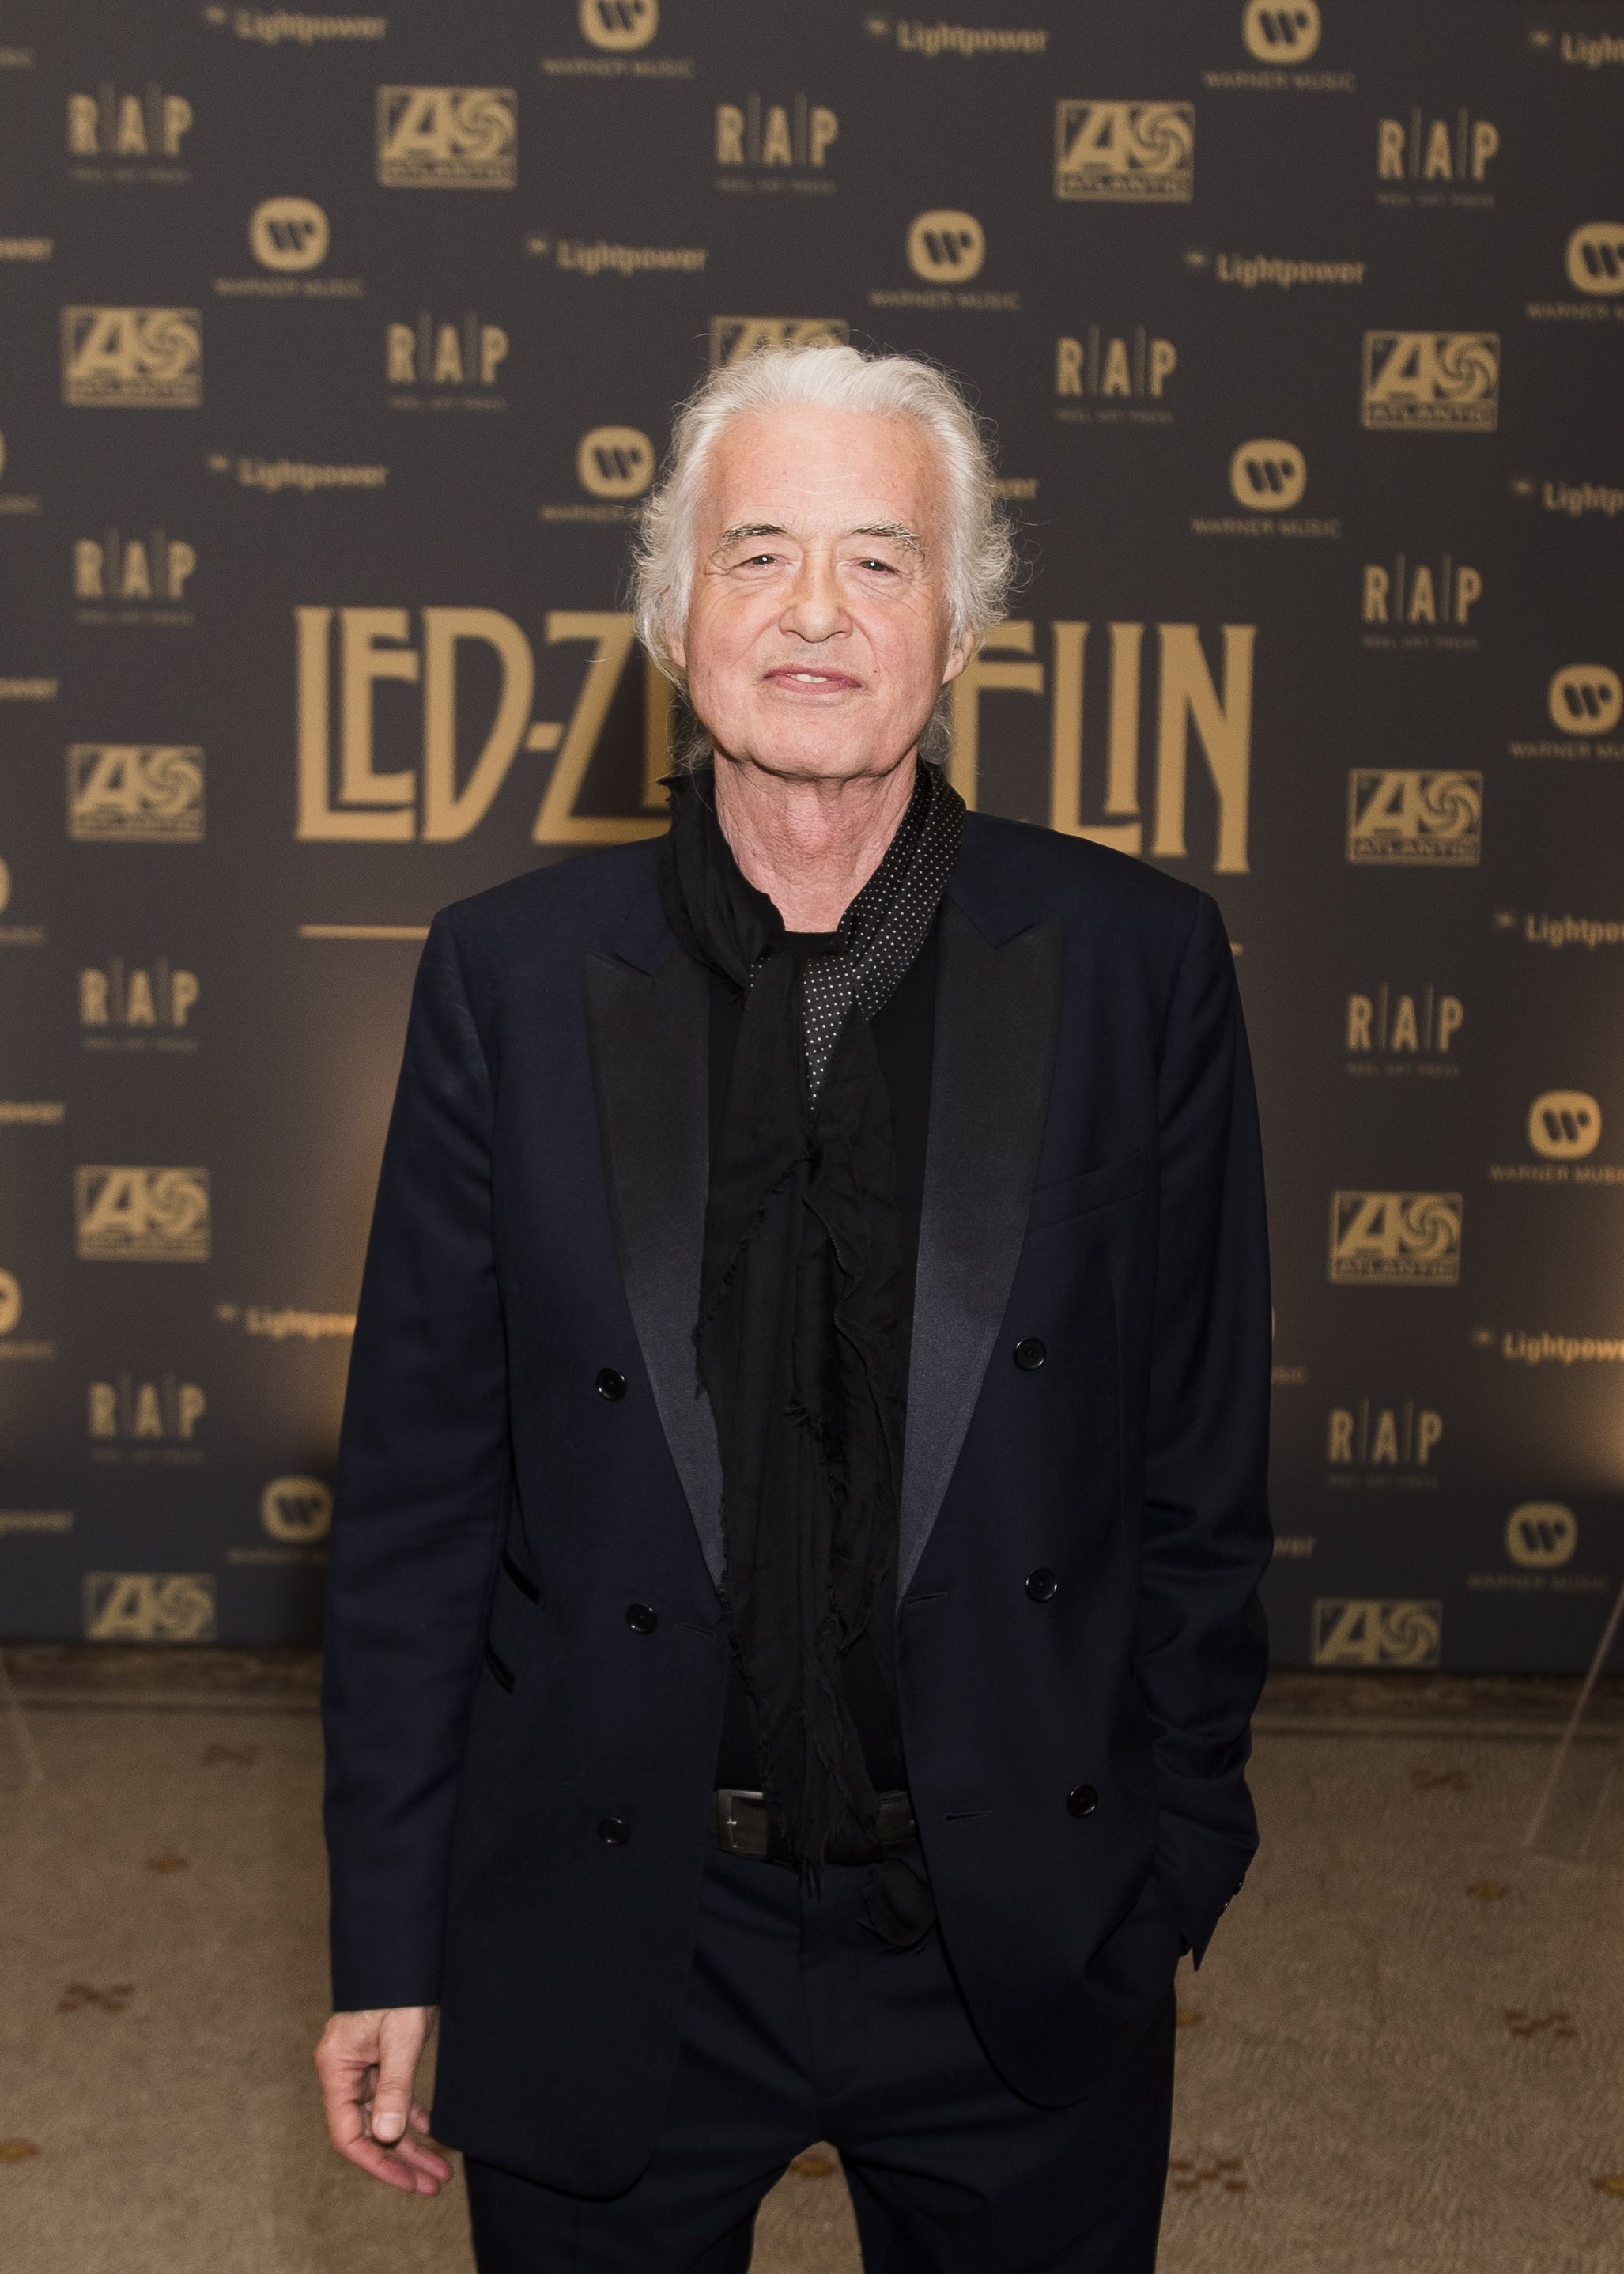 Steven Tyler afirma que recusou um show com Led Zeppelin, não precisava do trabalho